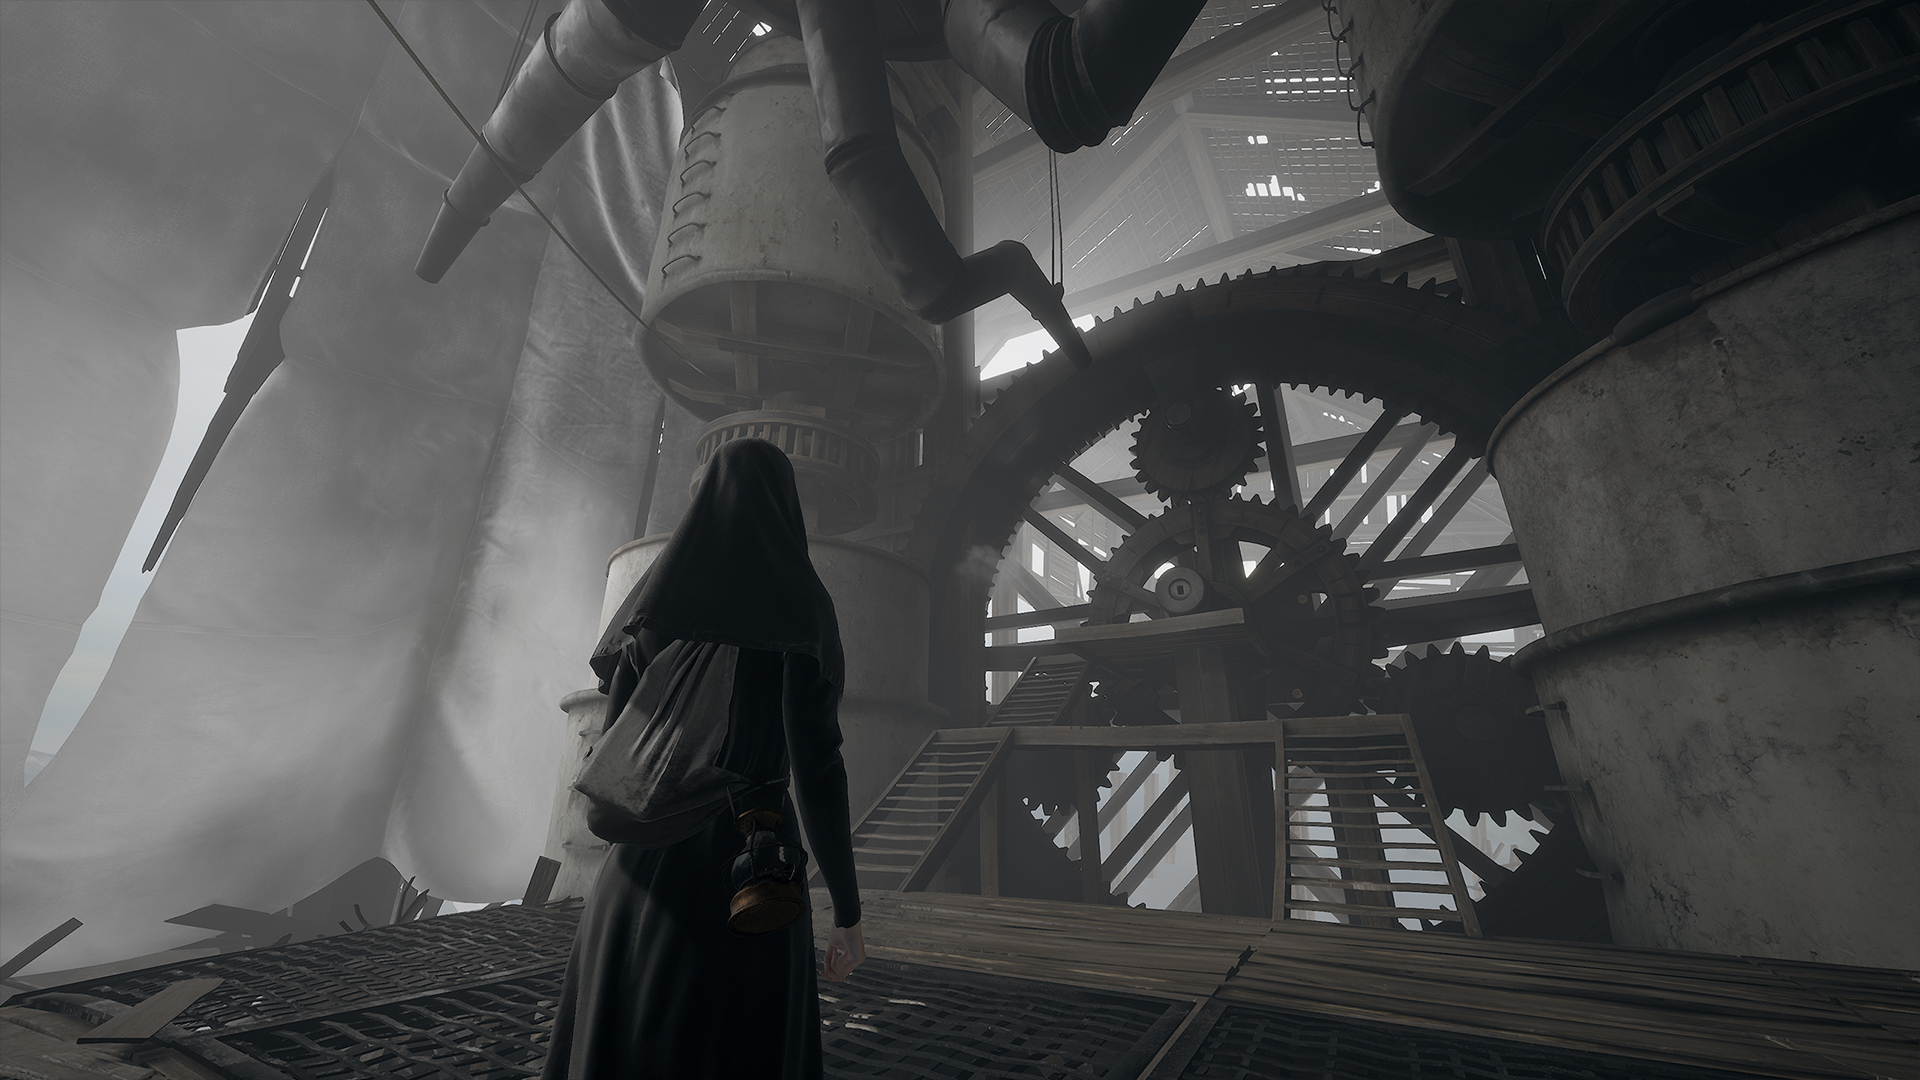 Indika looks upwards at a towering factory interior.